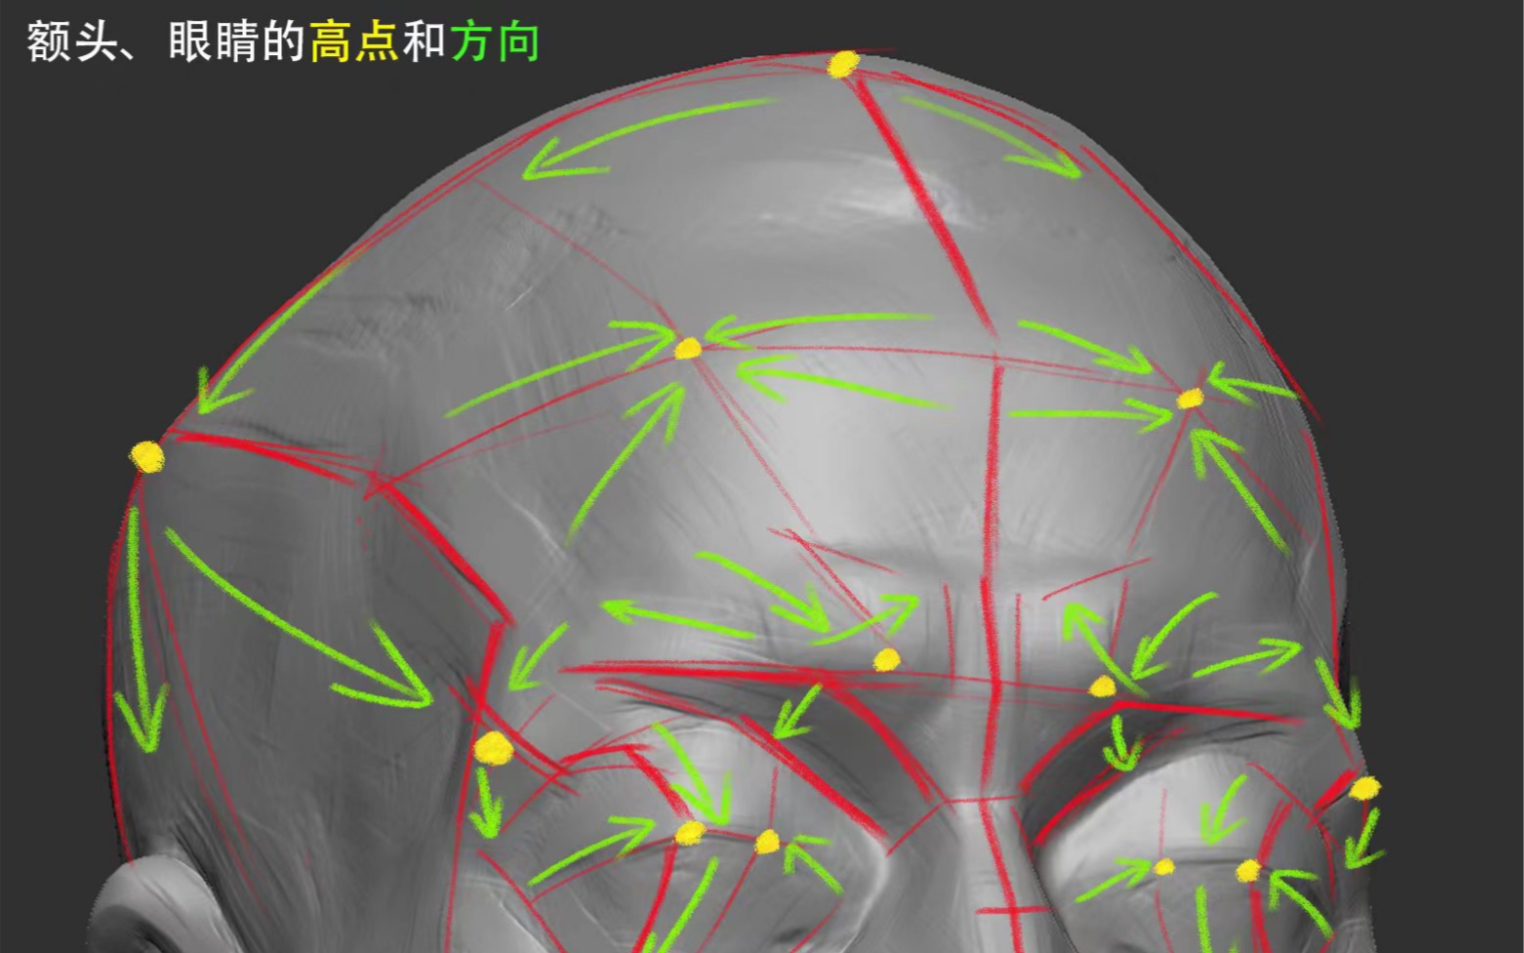 【全网最干头部结构教程】最详细、易懂的面部解剖造型